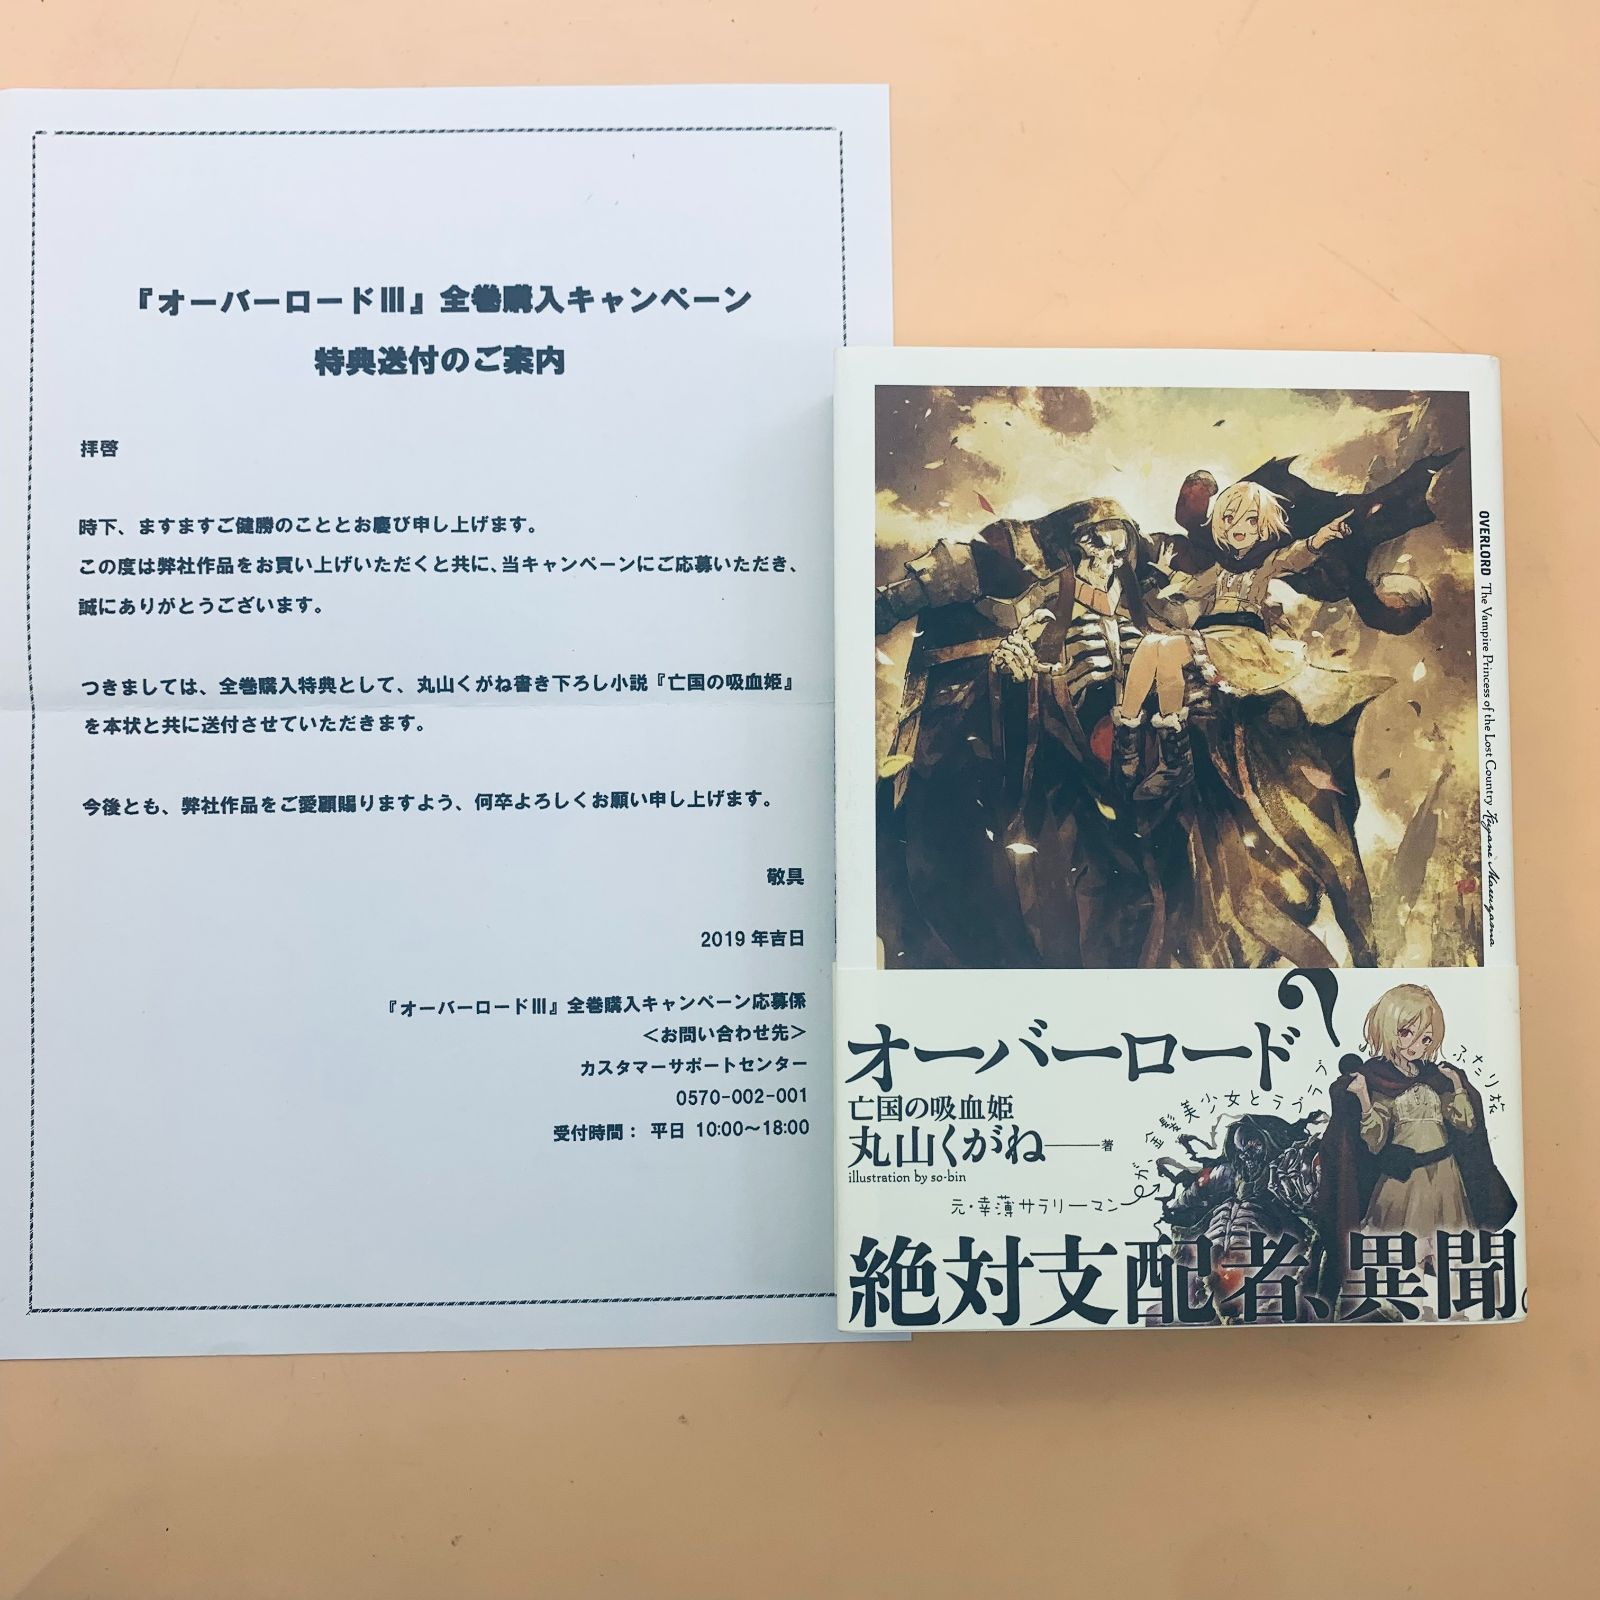 オーバーロードⅢ 全巻購入特典小説 亡国の吸血姫 - メルカリ